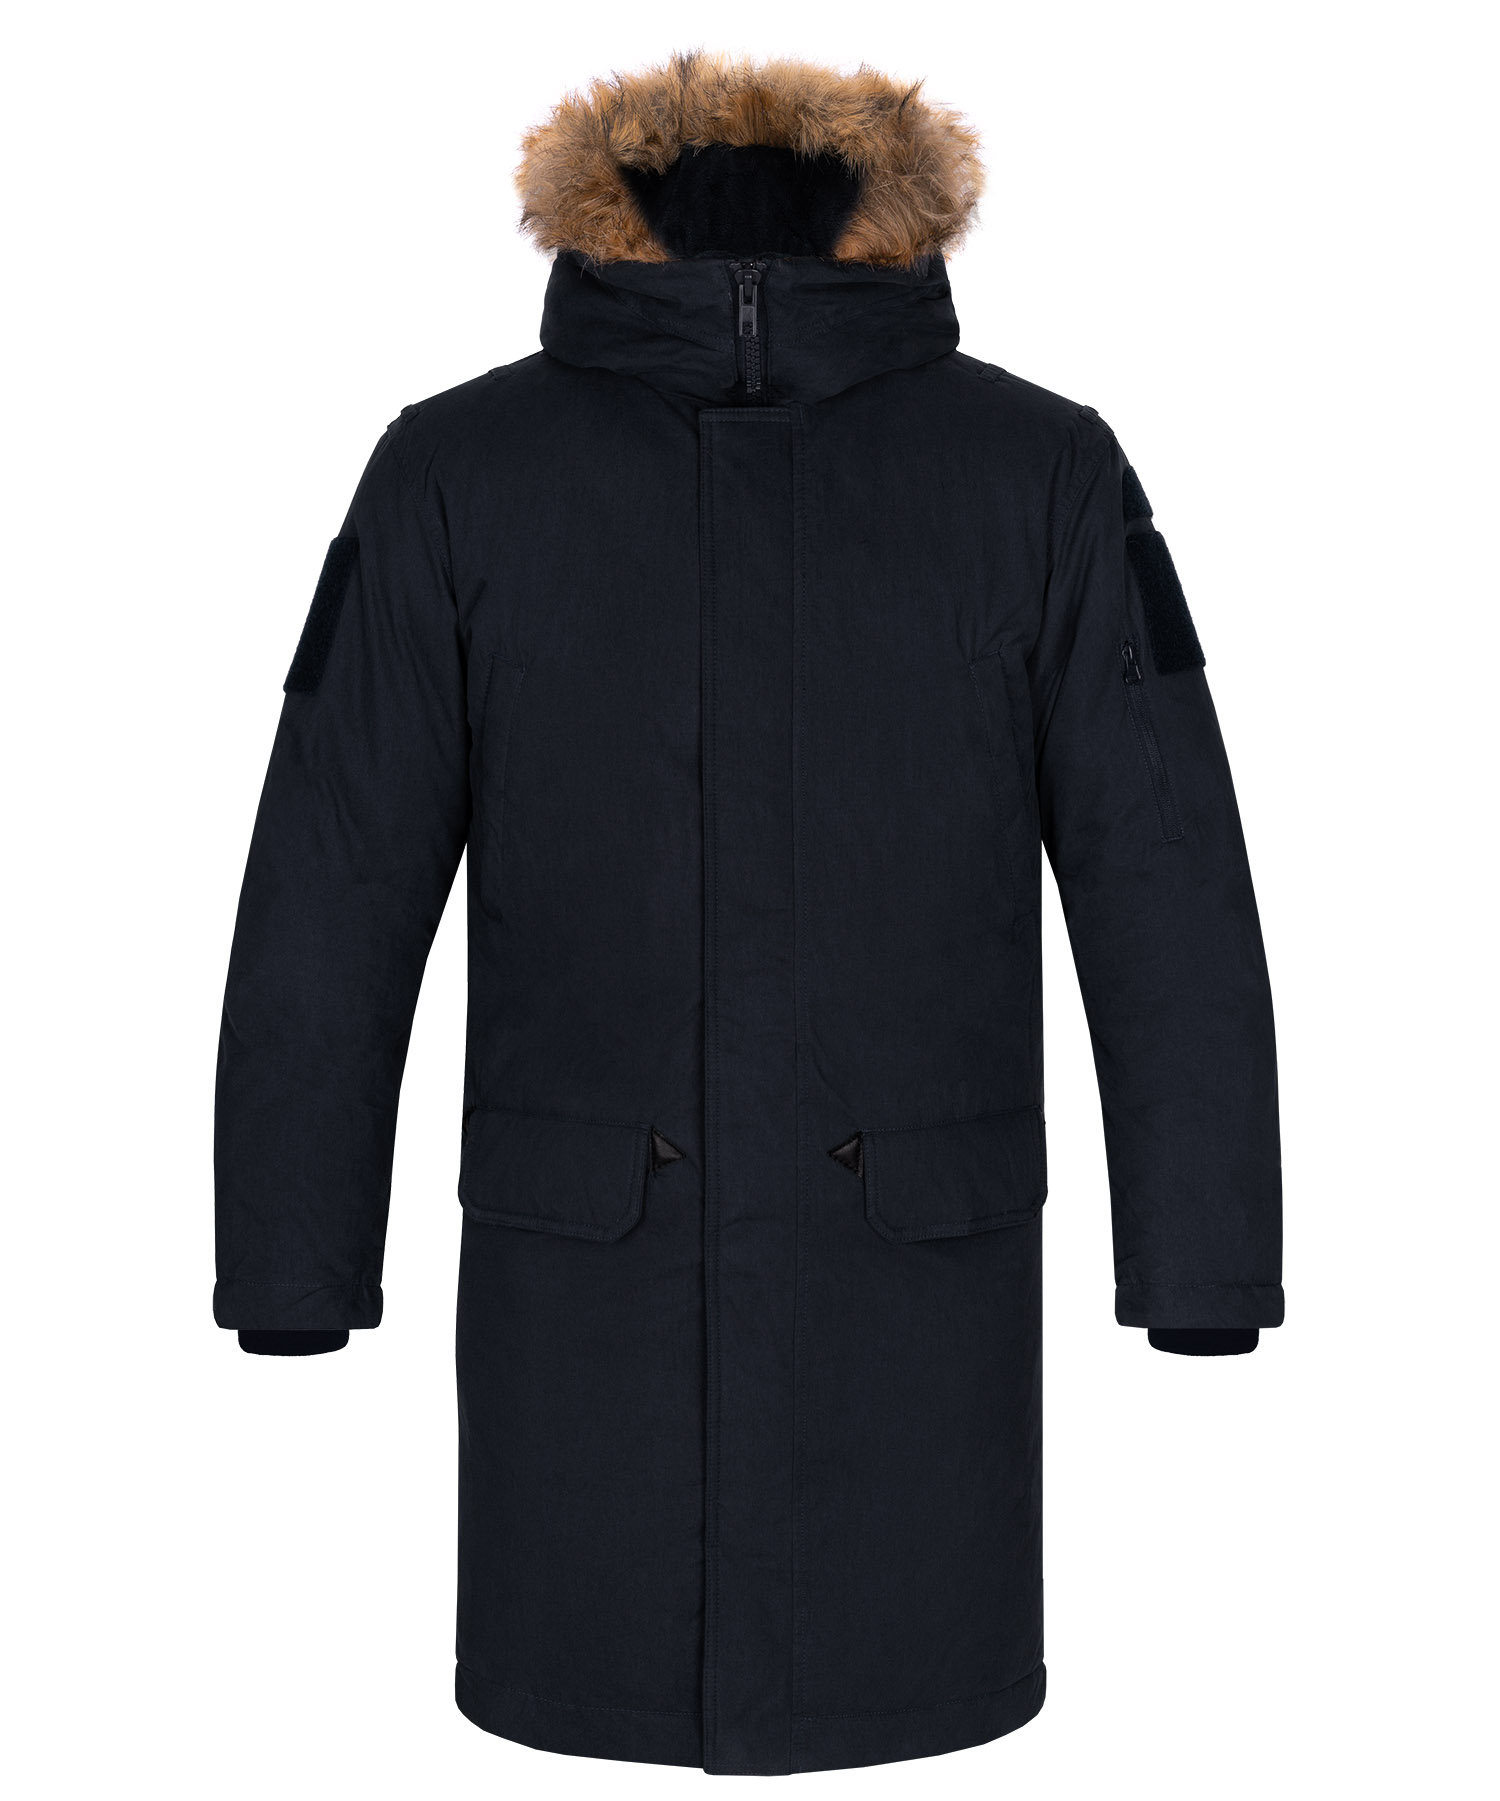 Куртка пуховая Forester К VR, цвет черный 1, размер 36/170